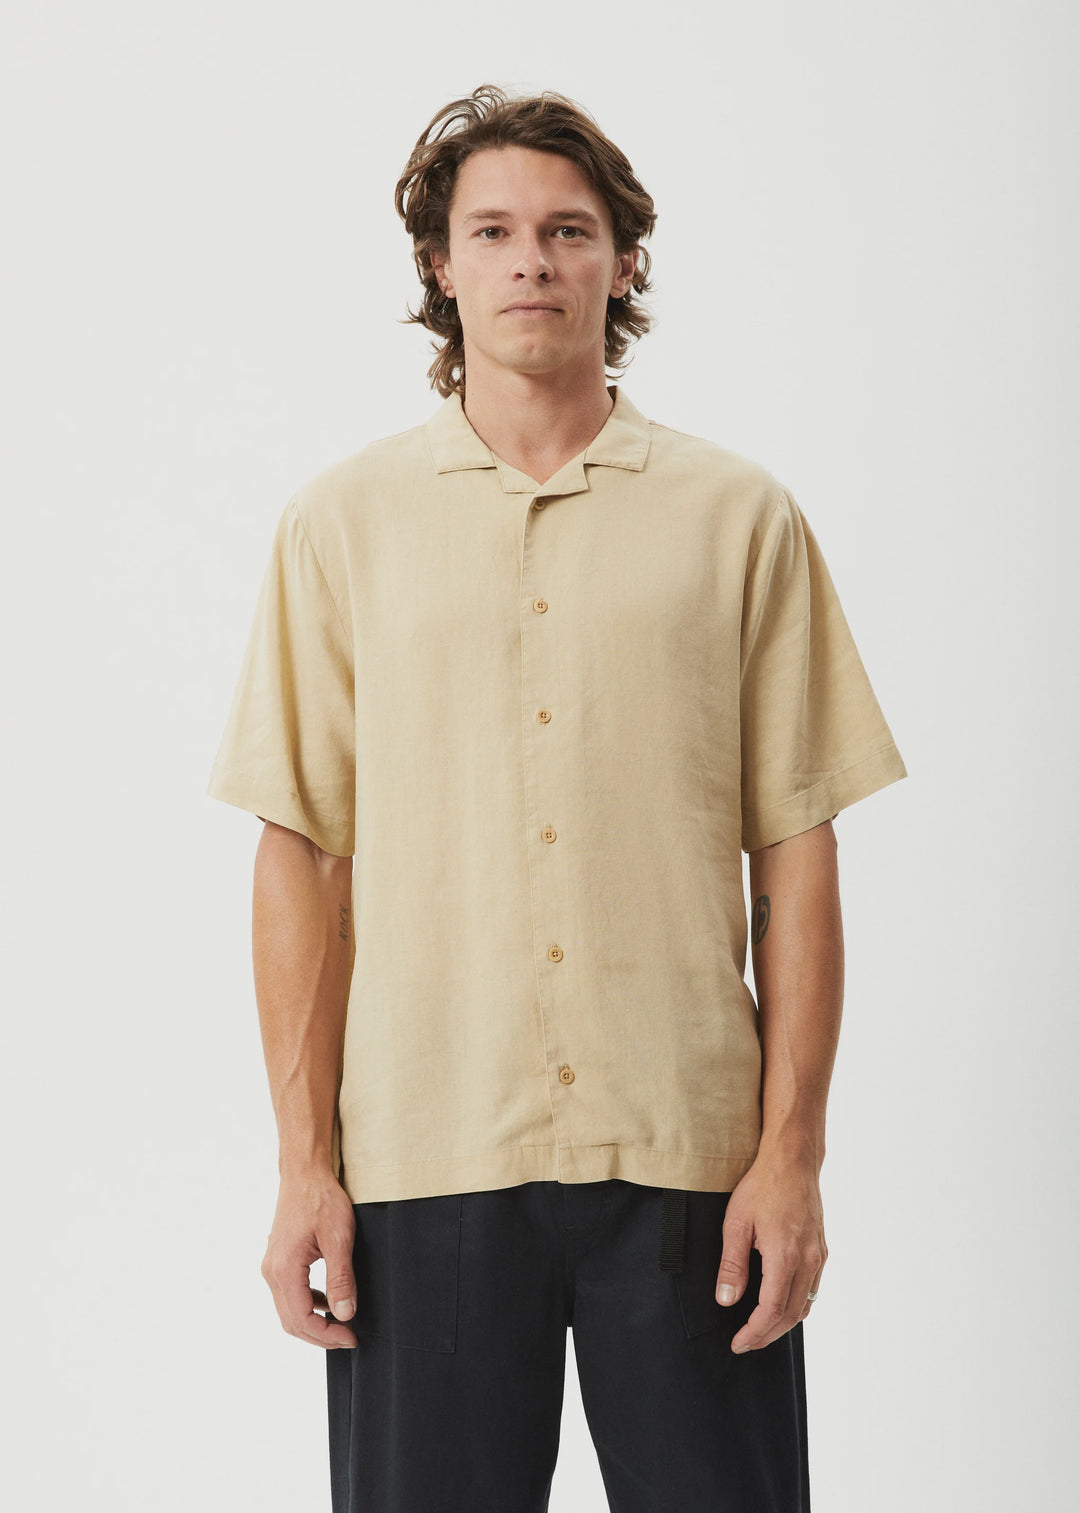 DAILY- HEMP CUBAN SHORT SLEEVE SHIRT - CAMEL Hemp Cuban Short Sleeve Shirt